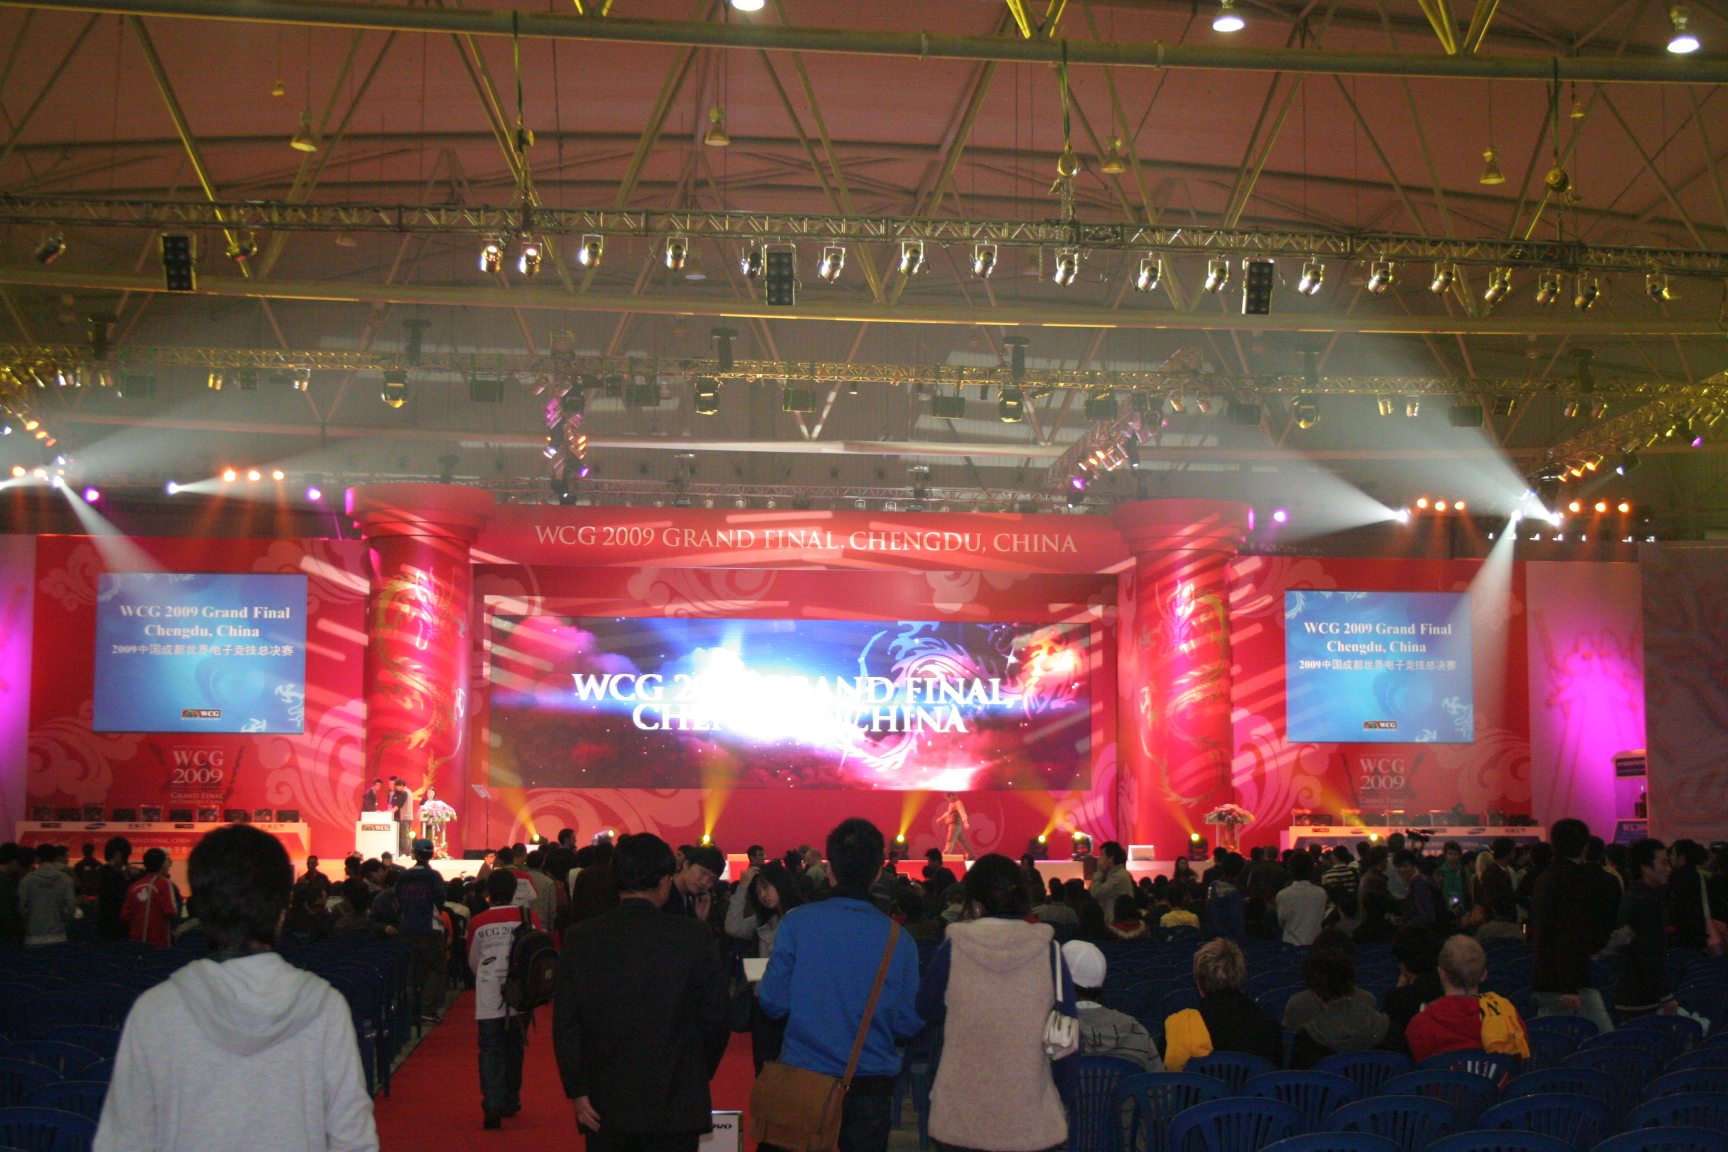 WCG2009世界总决赛开幕式现场图片(8)_游戏